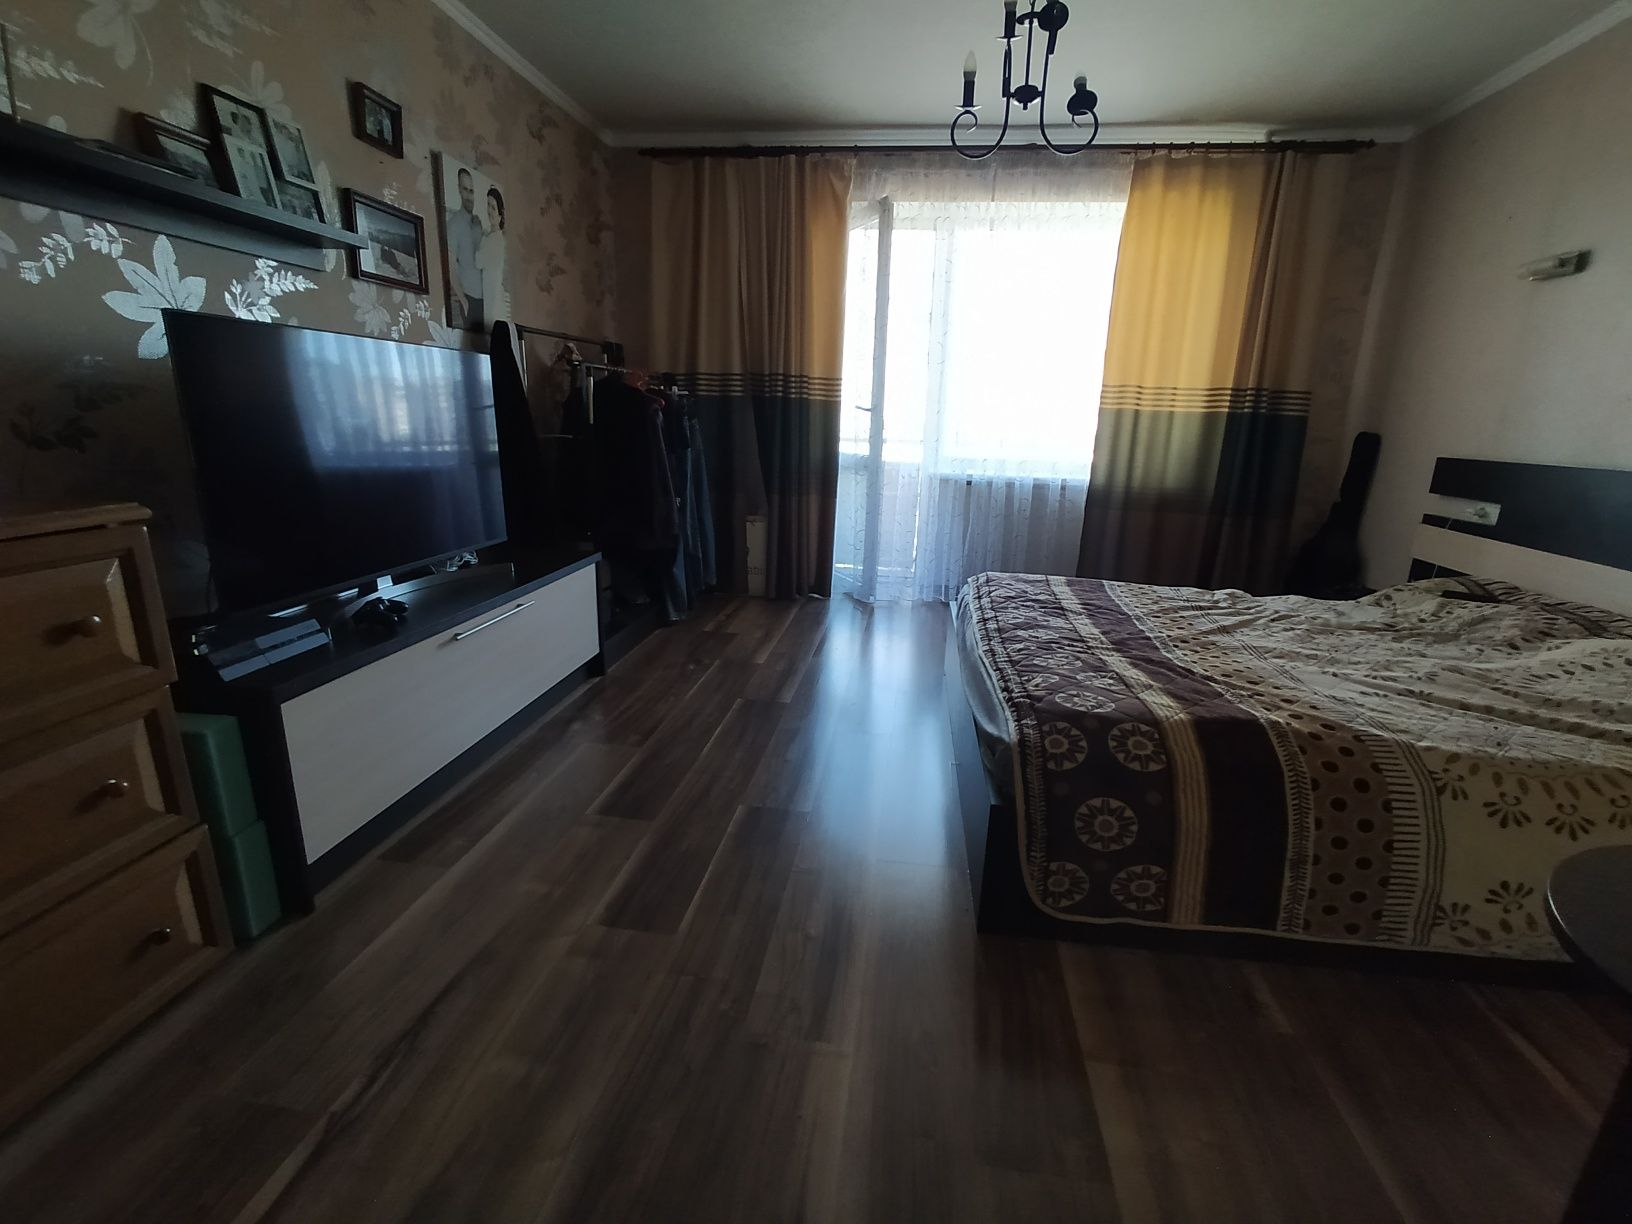 Продам трёхкомнатную квартиру в Новомосковске.